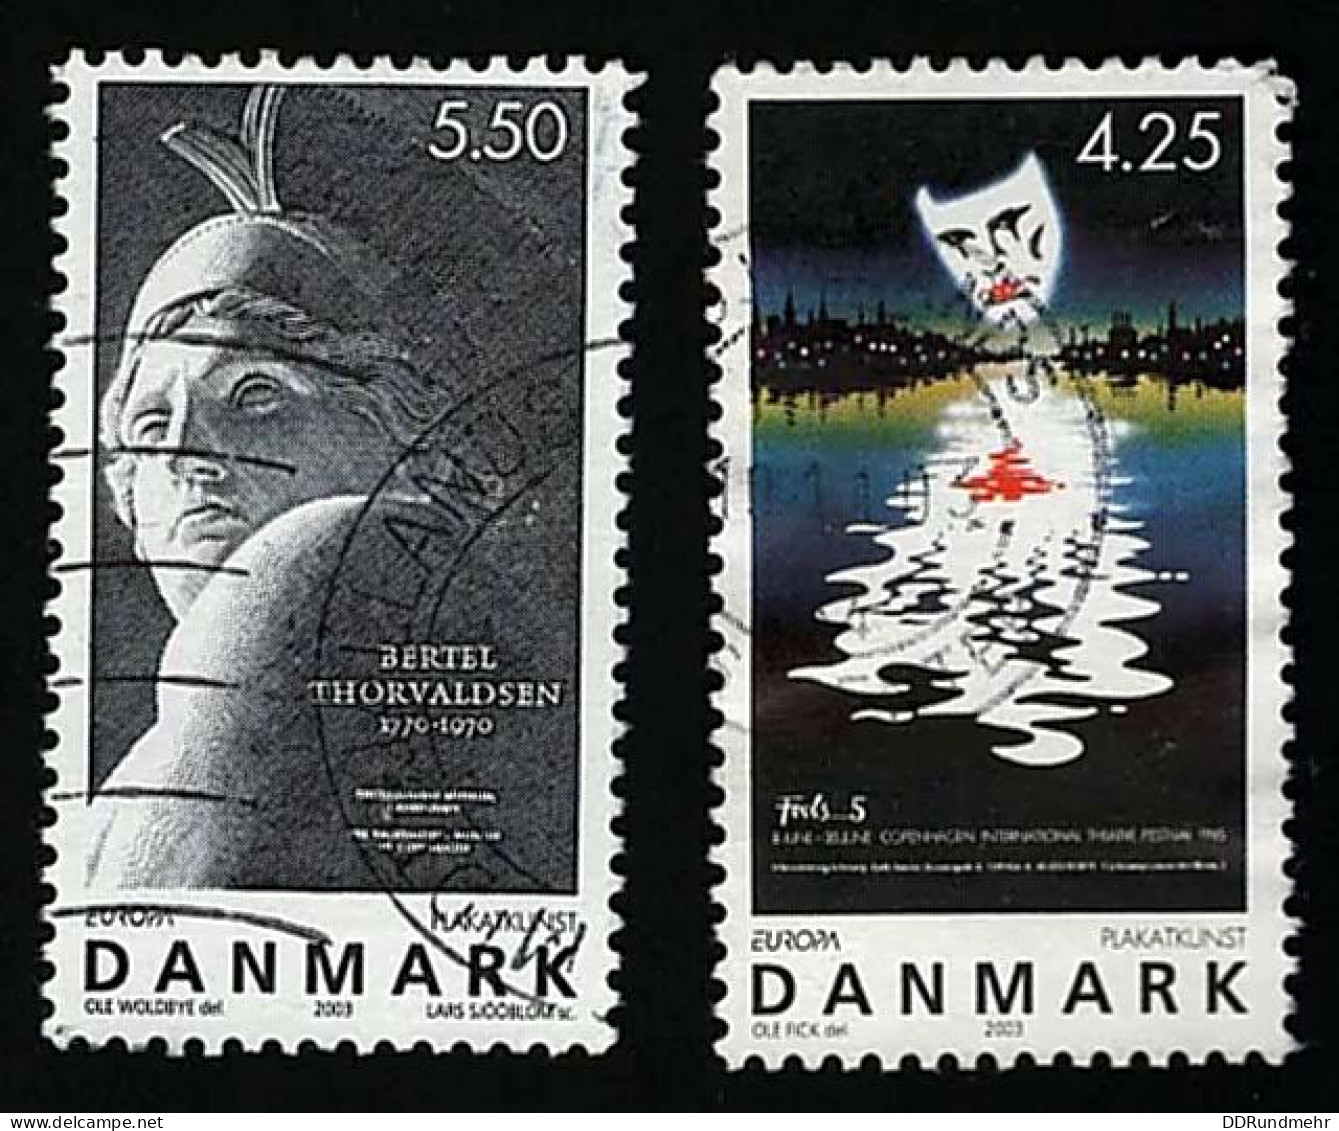 2003 Europa Michel DK 1341- 1342 Stamp Number DK 1250 - 1251 Yvert Et Tellier DK 1344 - 1345 Used - Gebruikt